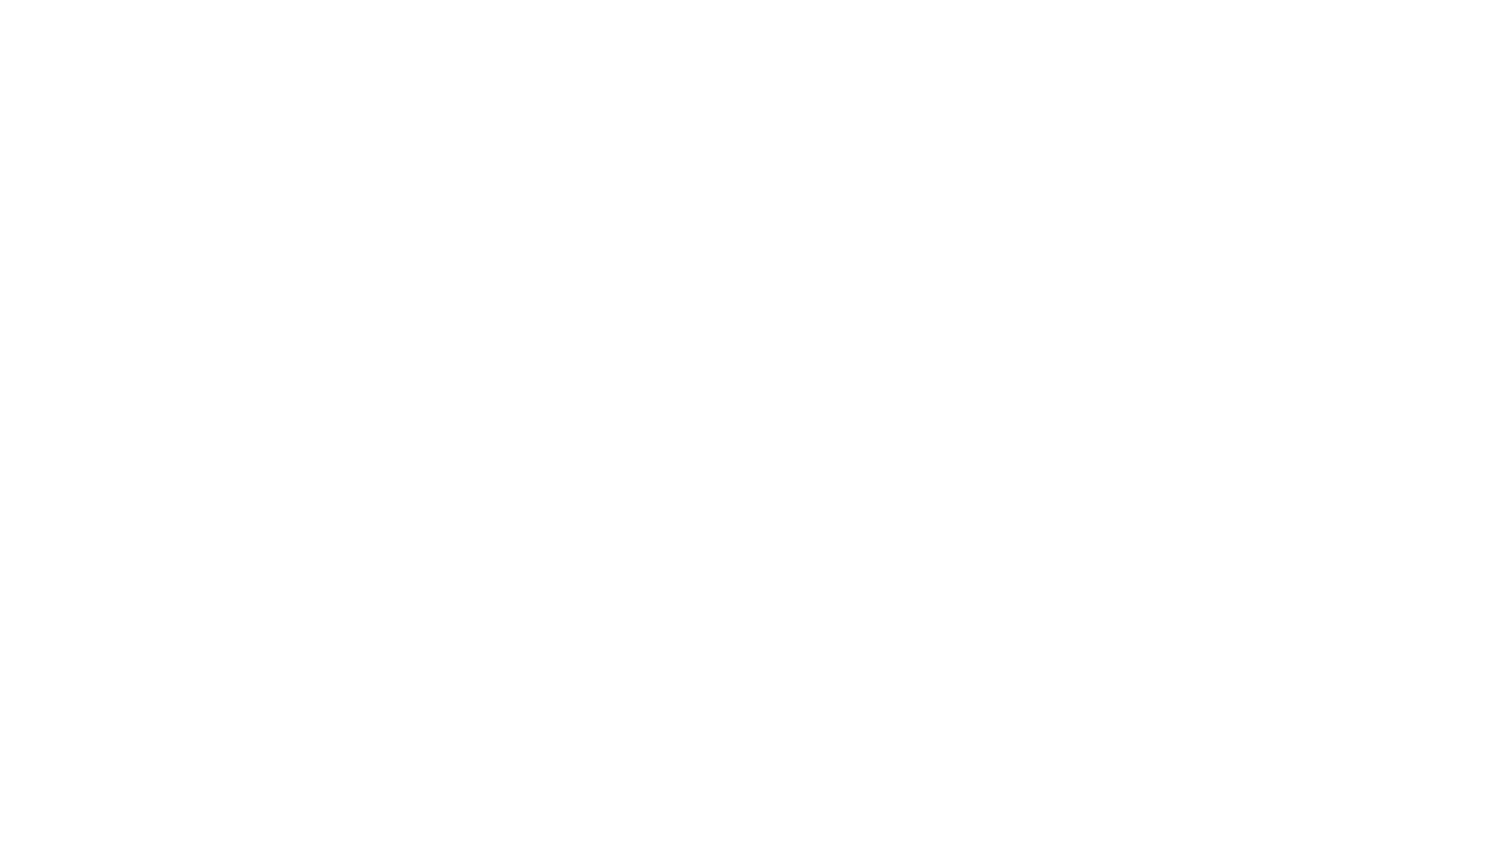 RLO Agency